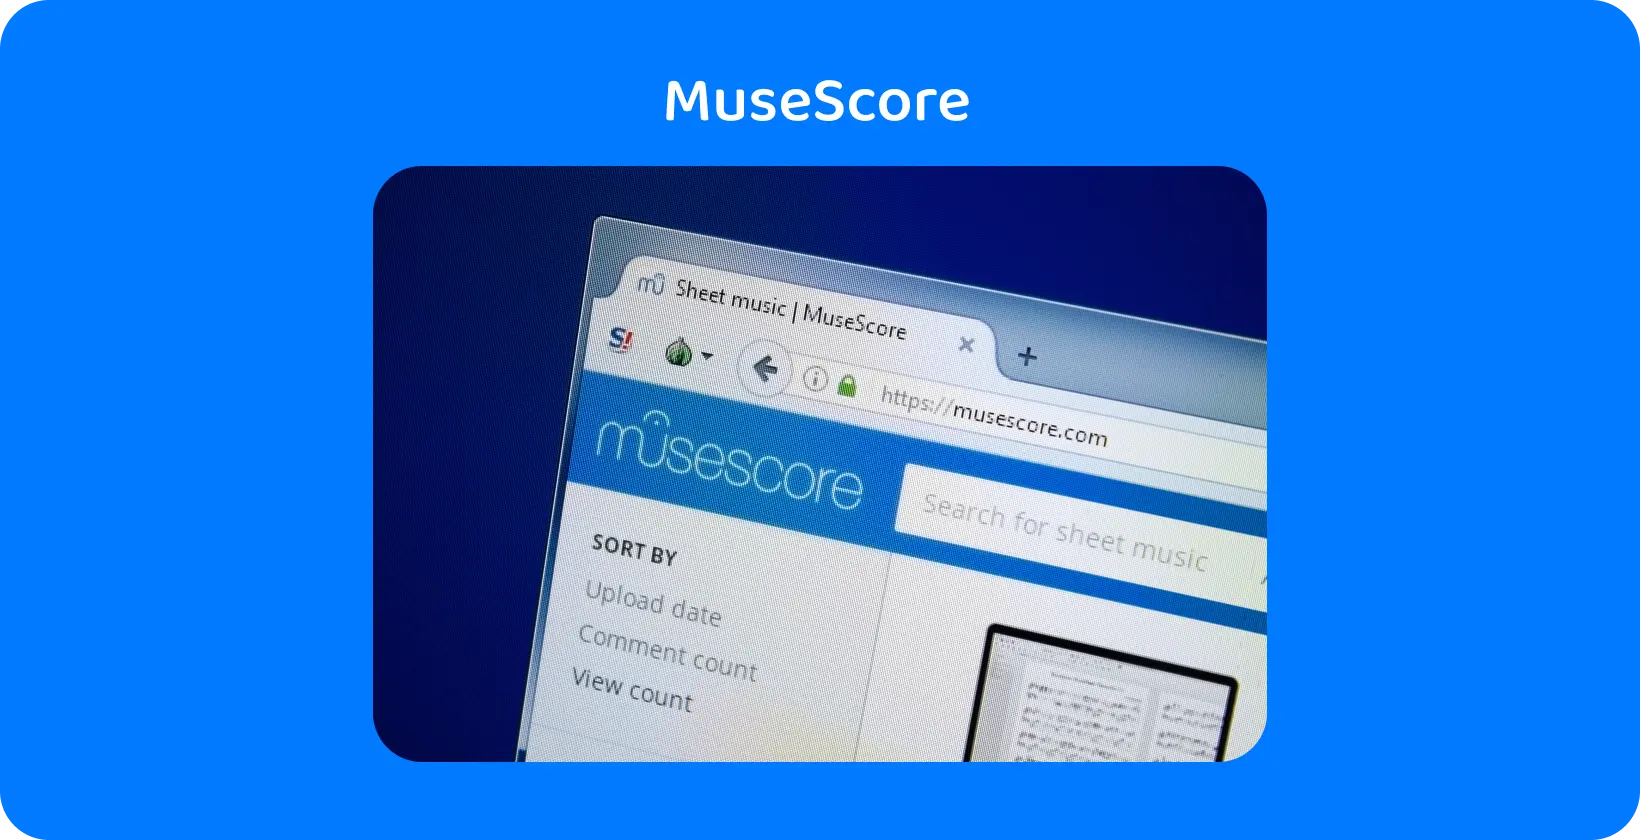 Svetainės vaizdas MuseScore iš arti, pabrėžiant natų paiešką – pagrindinį garso transkripcijos orientavimo įrankį.